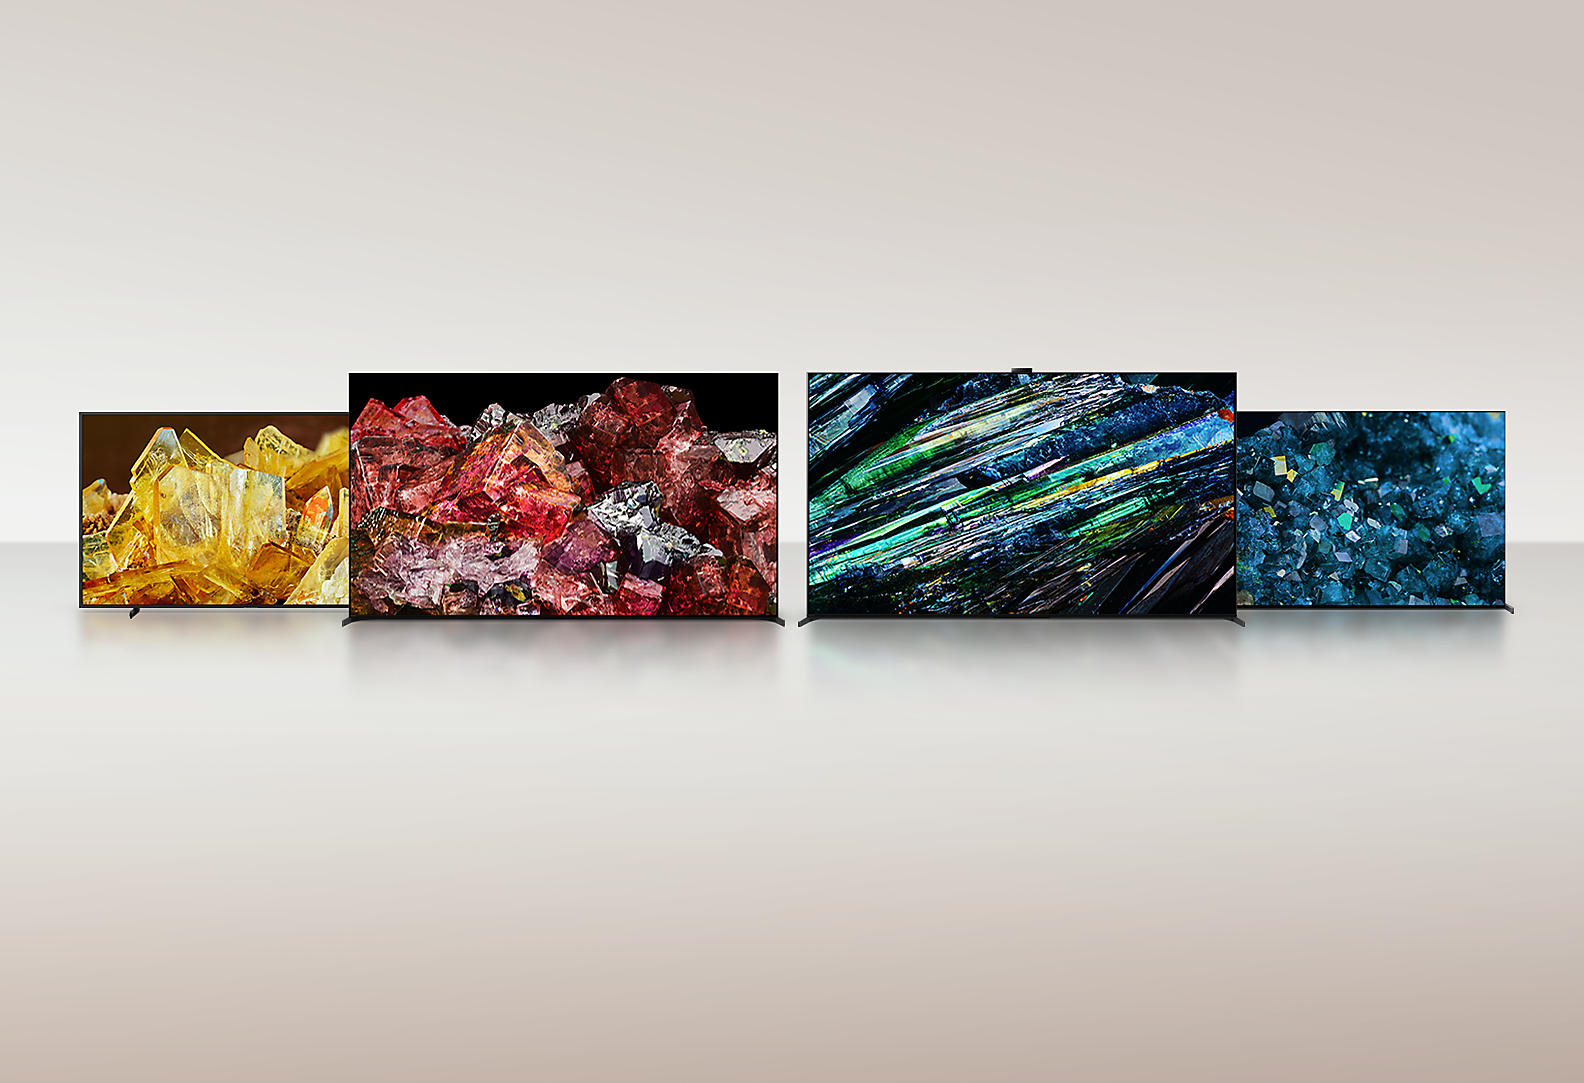 Bốn TV BRAVIA XR đang hiển thị hình ảnh toàn màn hình của các loại tinh thể khác nhau với chi tiết và màu sắc đáng kinh ngạc